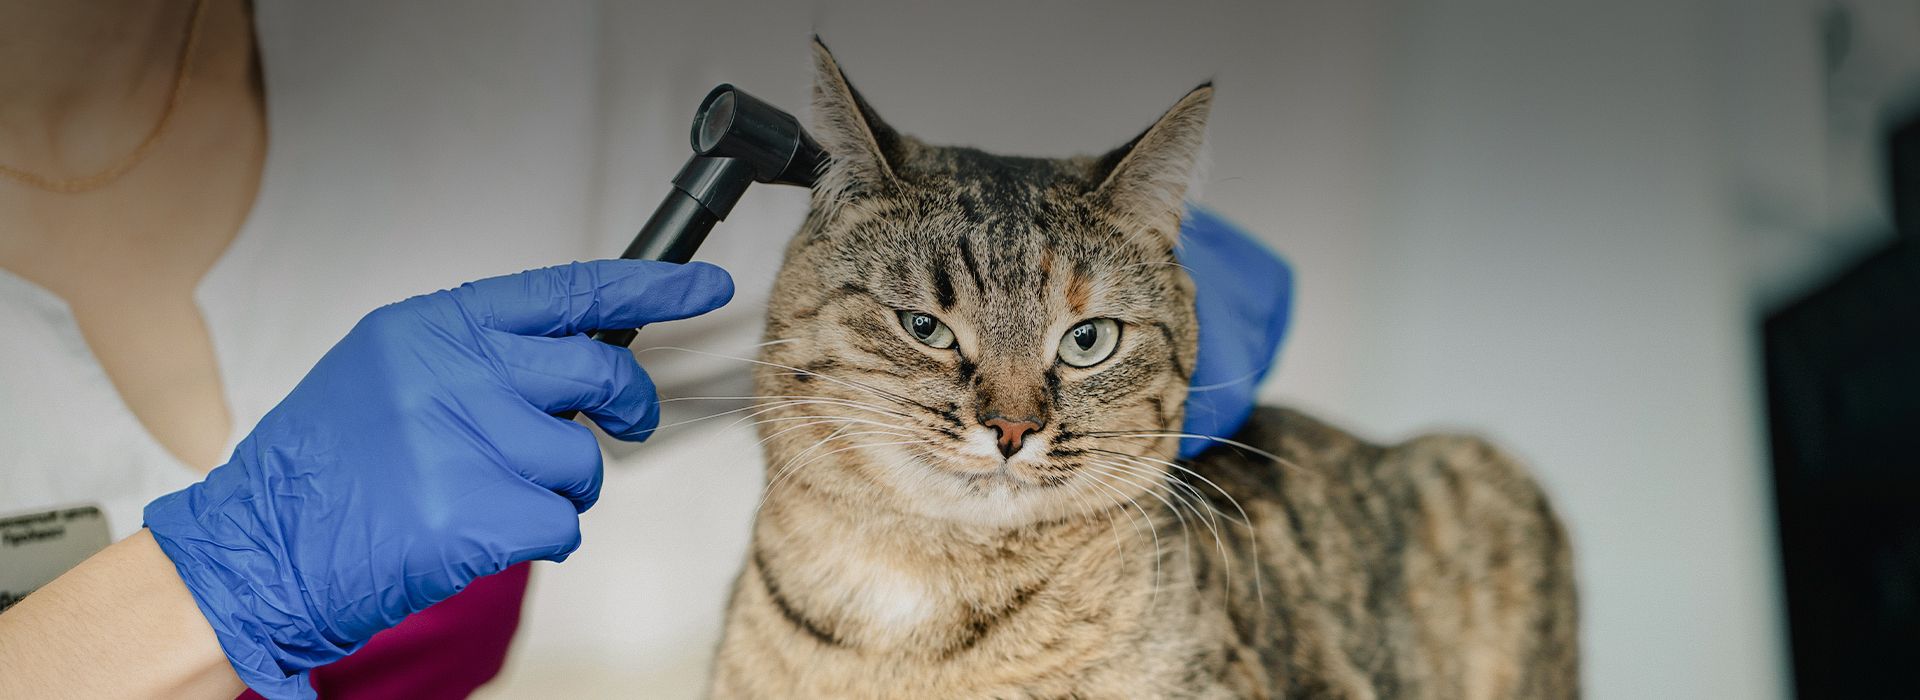 vet checking cat's ear